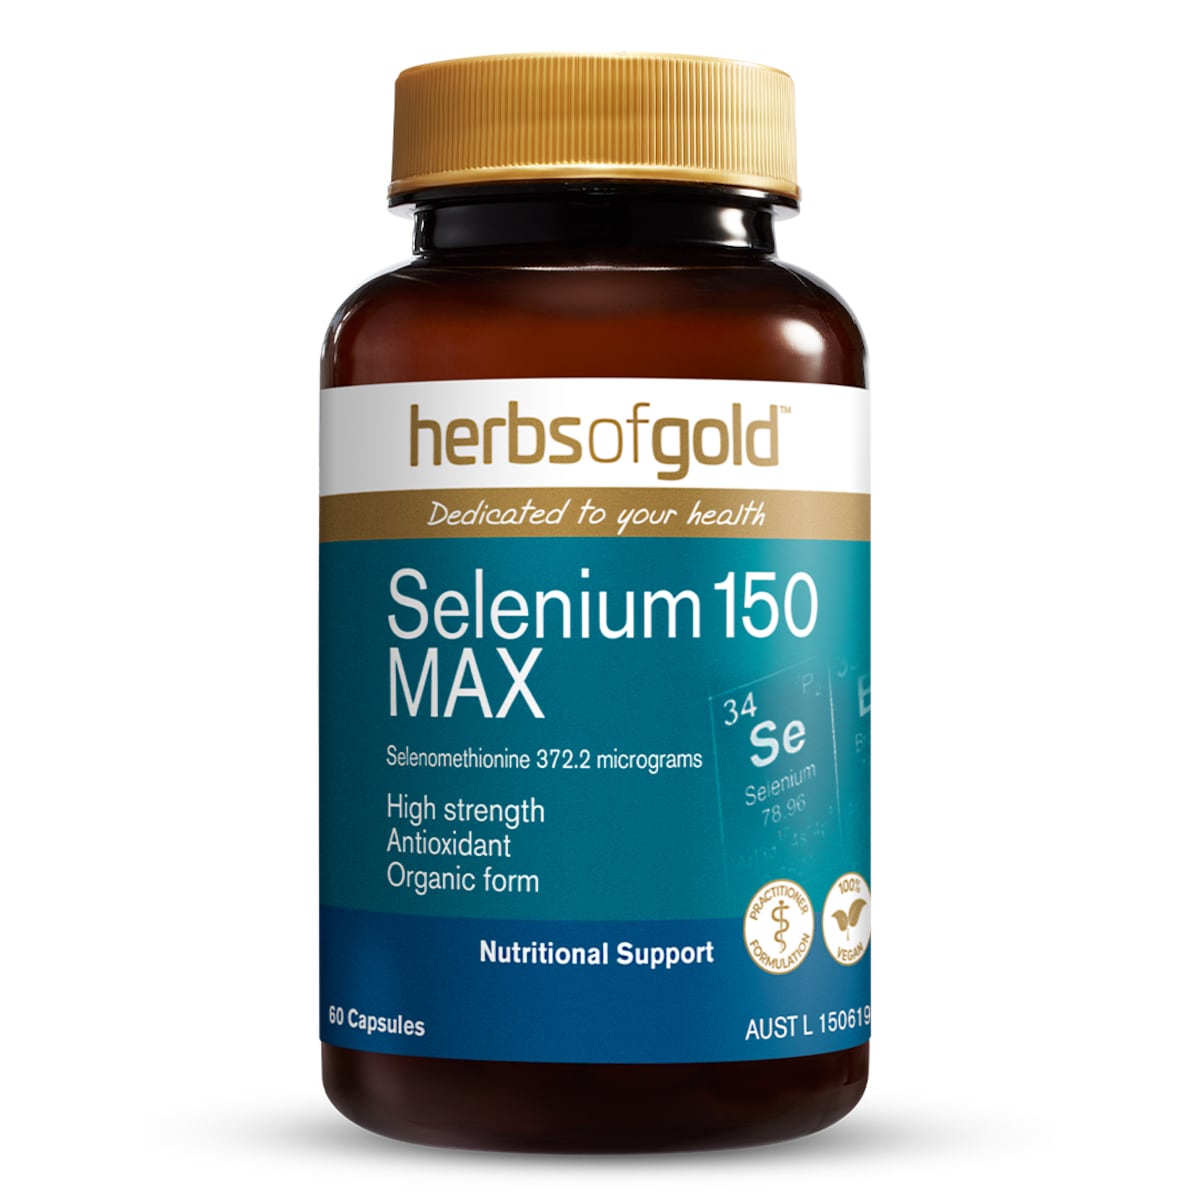 Herbs of Gold Selenium 150 MAX 60 Capsules Australia